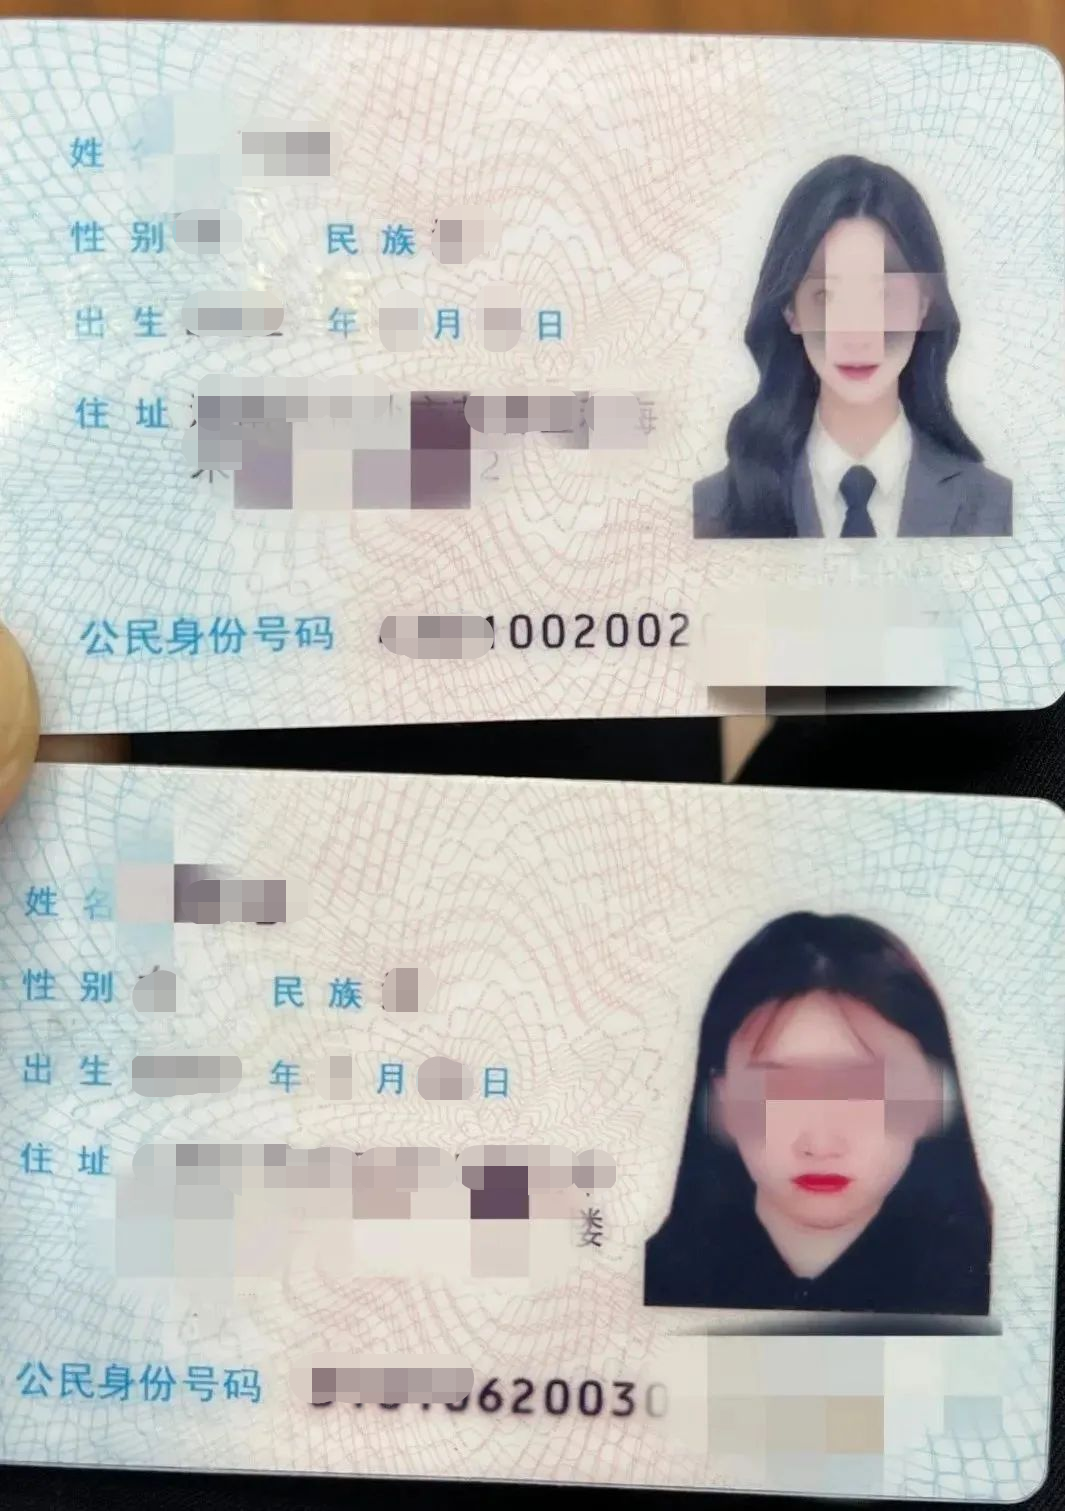 18岁身份证号带照片图片